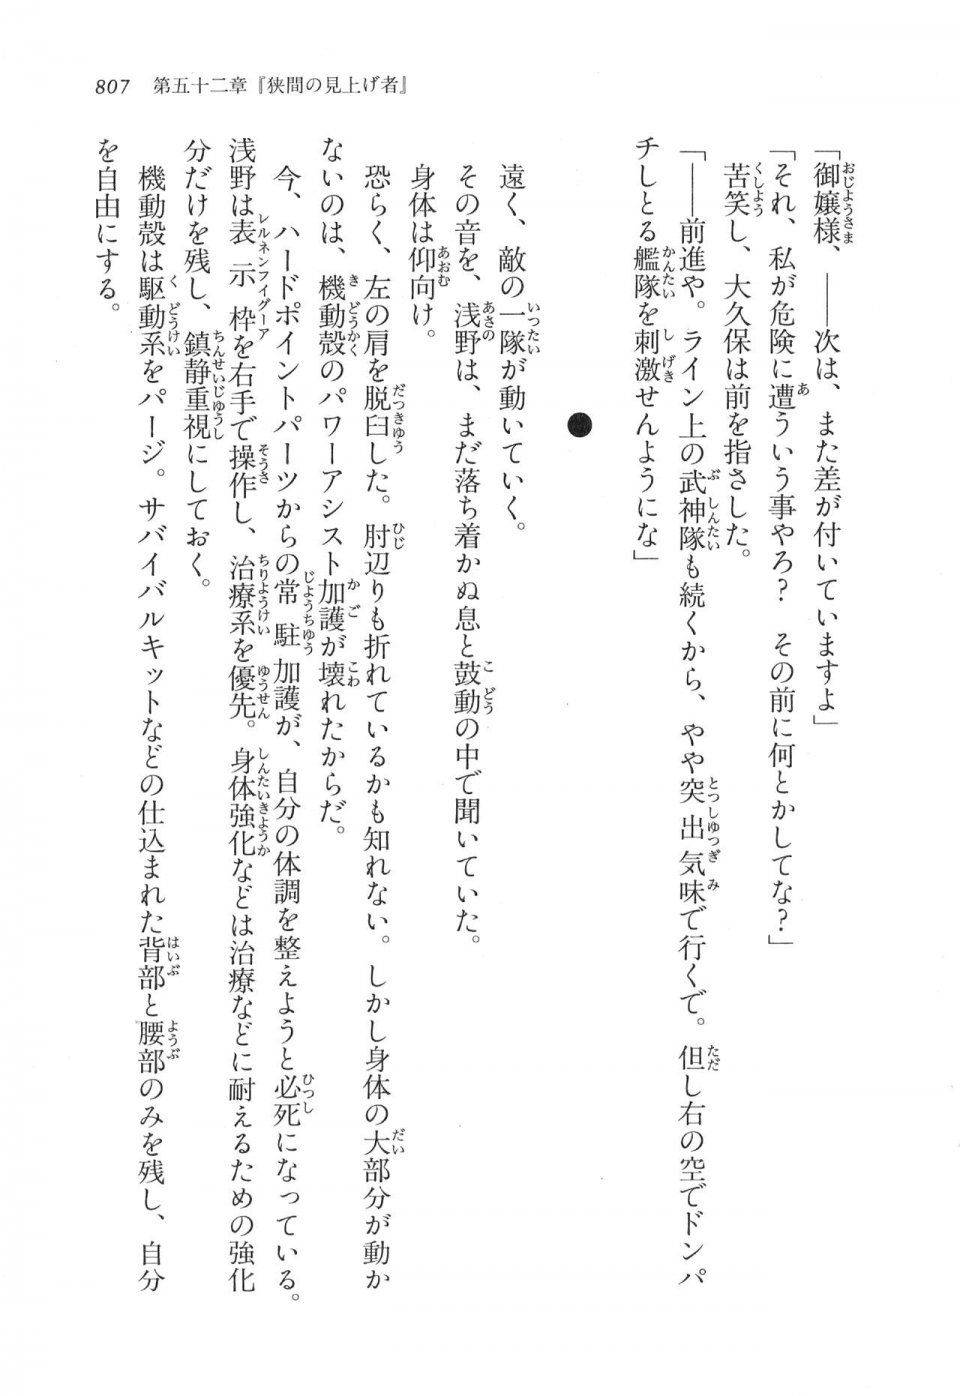 Kyoukai Senjou no Horizon LN Vol 17(7B) - Photo #809